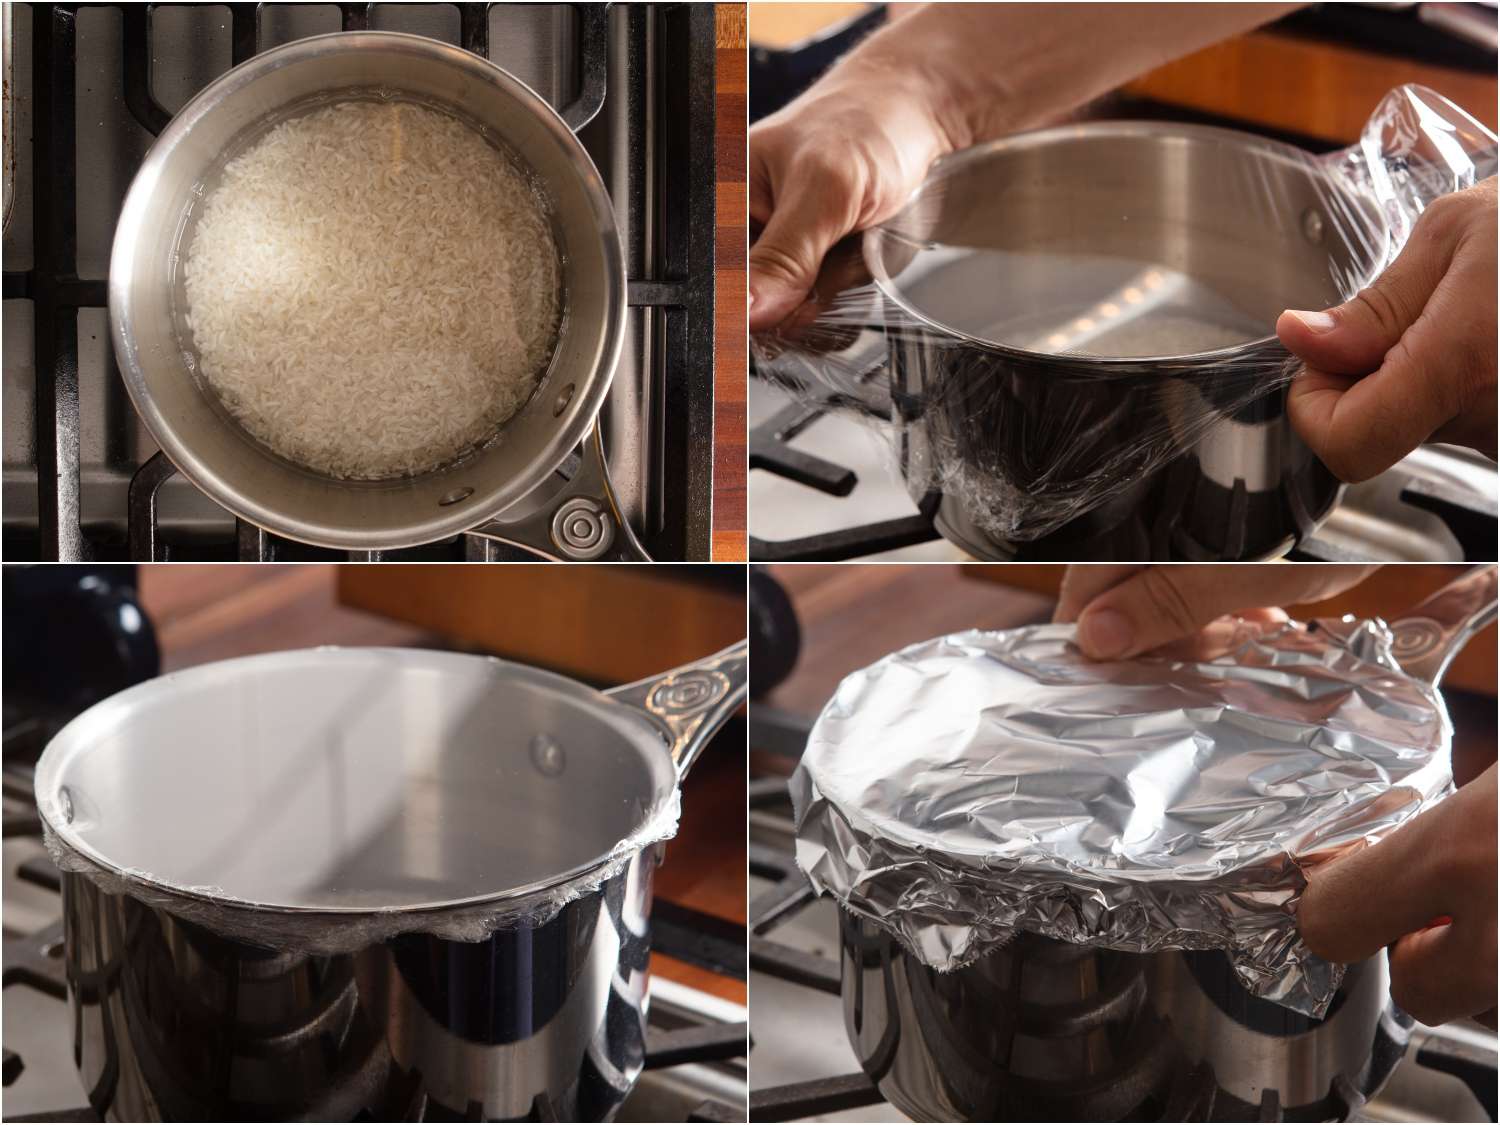 拼贴:一锅白米饭和水;把保鲜膜紧紧地包在锅上;展示了保鲜膜的紧致和平整;用铝箔紧紧盖住的gydF4y2Ba